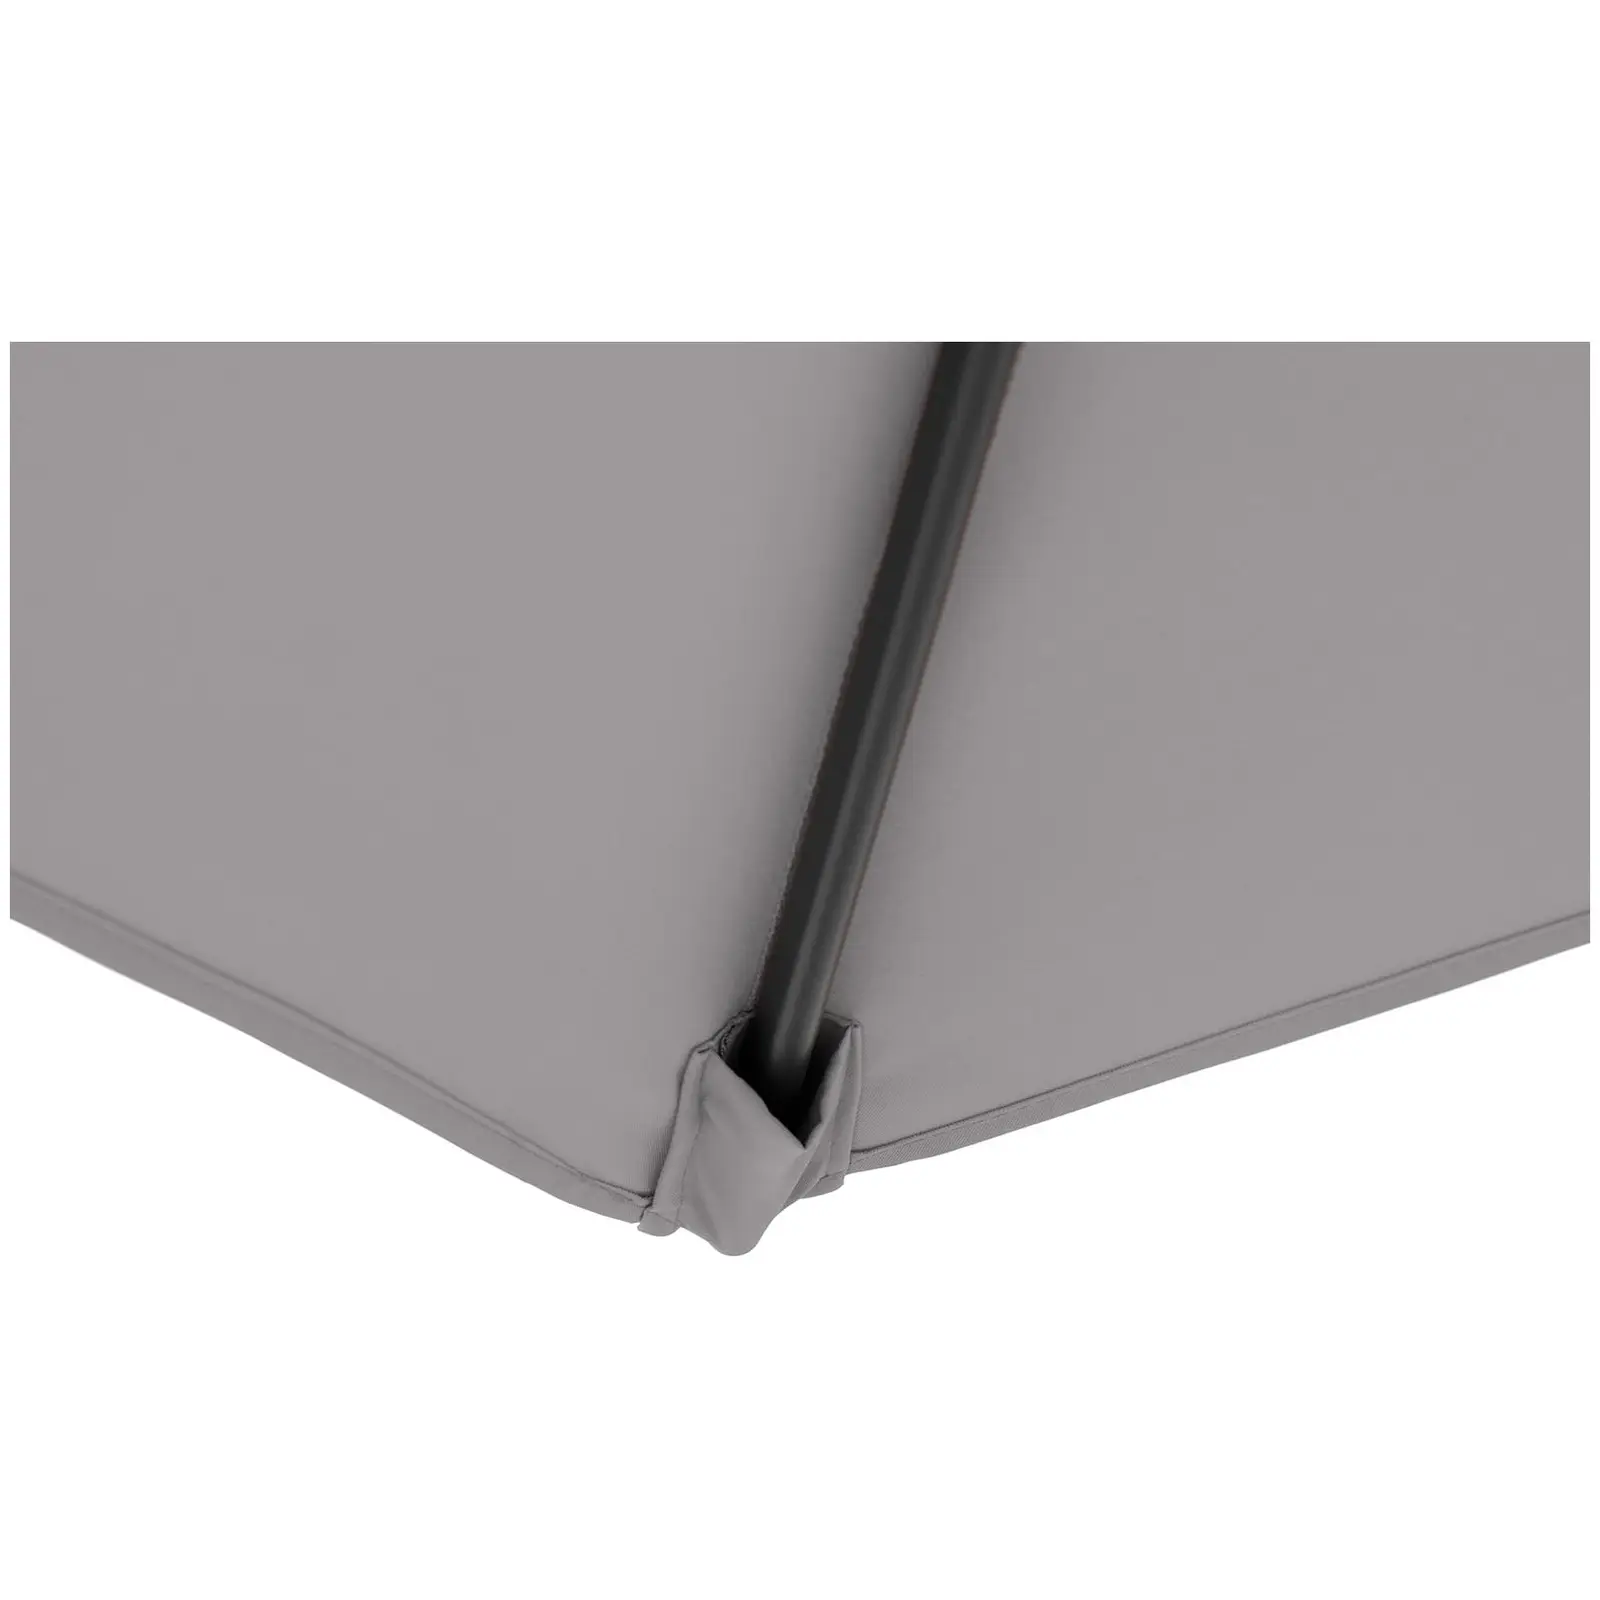 B-zboží Boční slunečník - tmavě šedý - čtvercový - 250 x 250 cm - naklápěcí